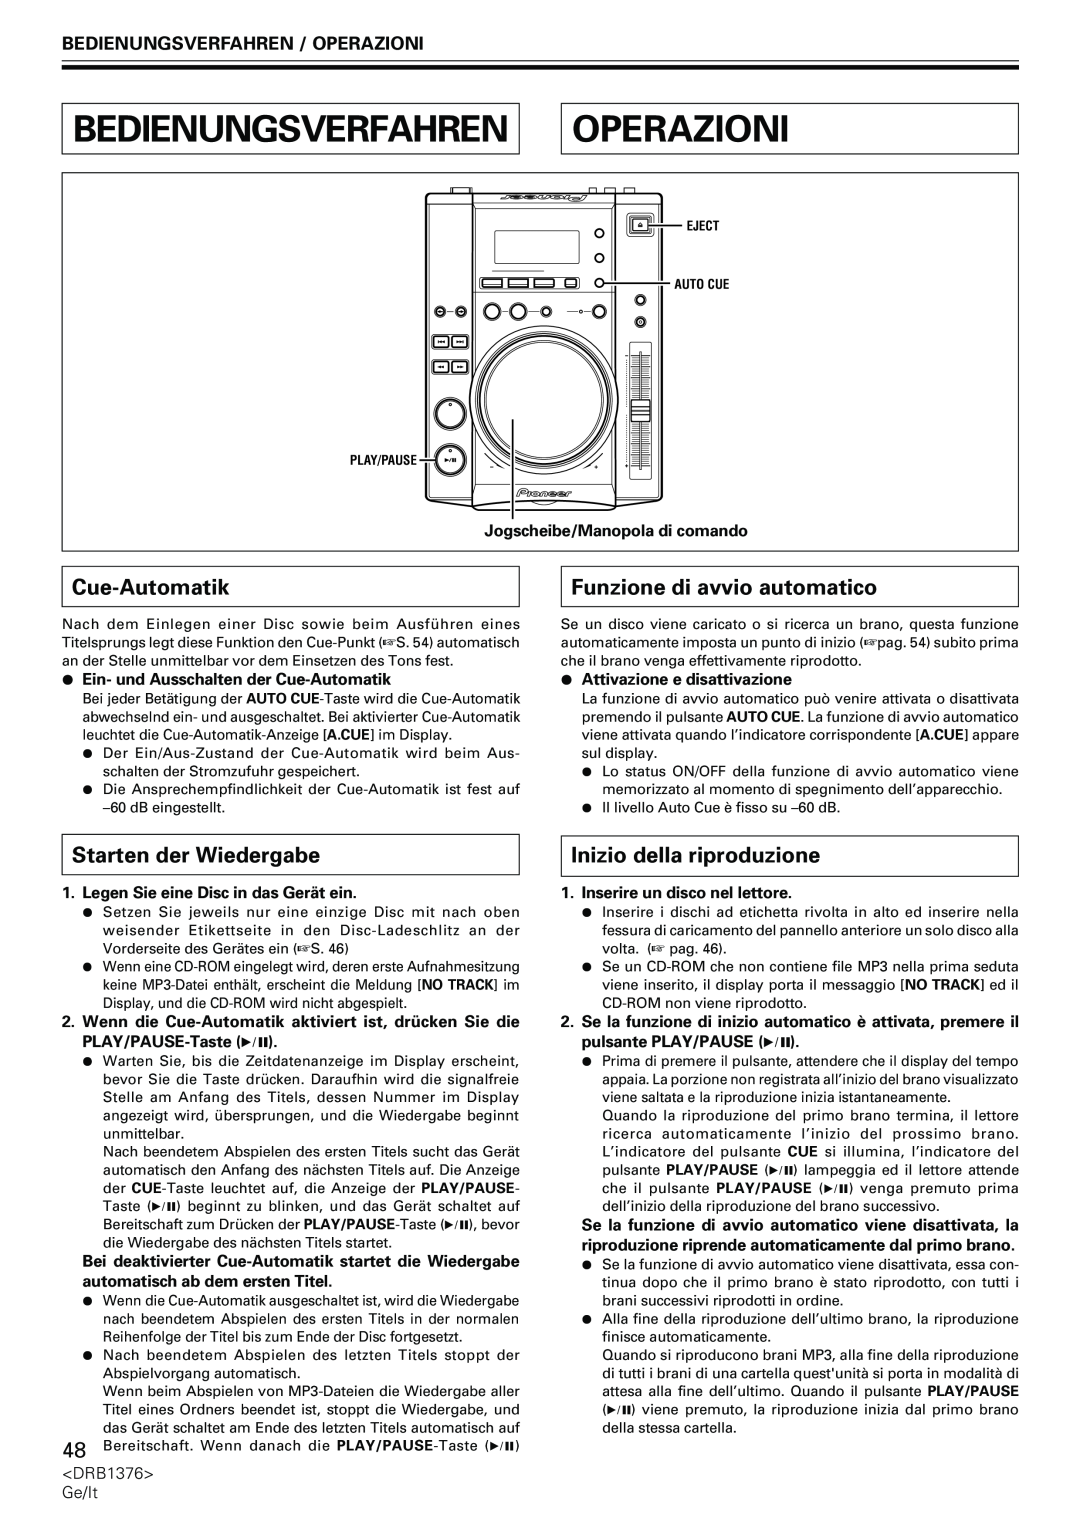 Pioneer CDJ-200 manual Bedienungsverfahren, Operazioni, Cue-Automatik, Funzione di avvio automatico, Starten der Wiedergabe 